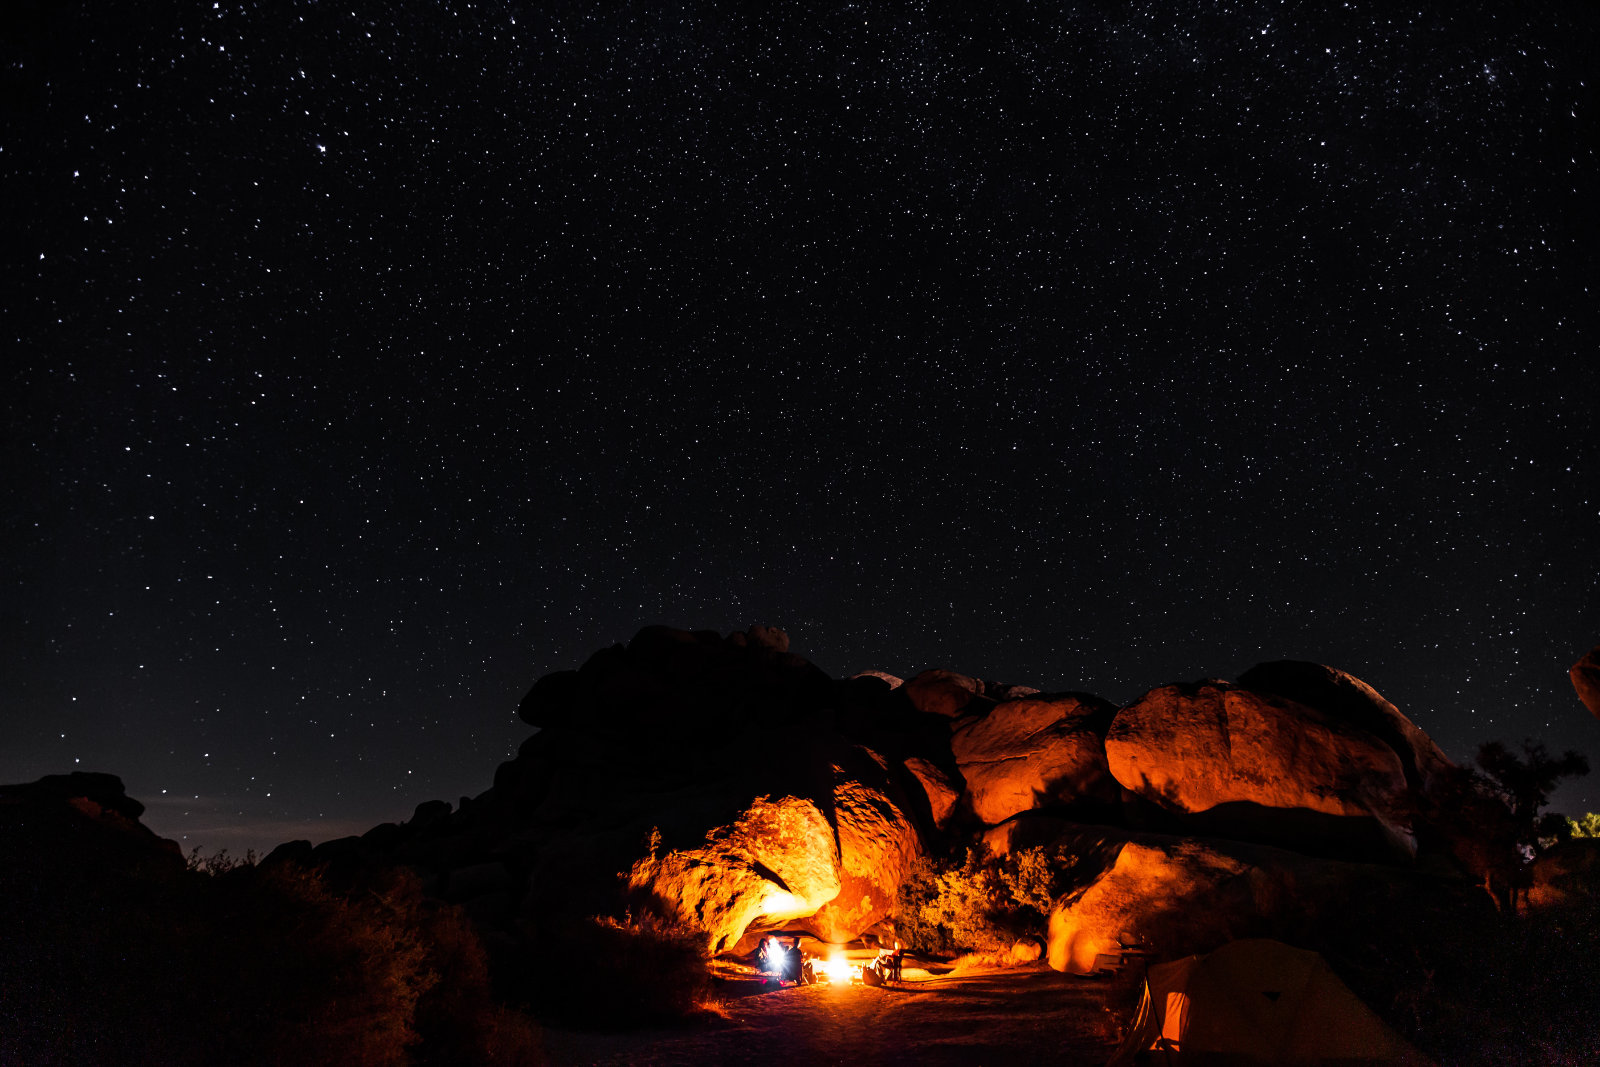 A campfire illuminates a nighttime desert landscape.